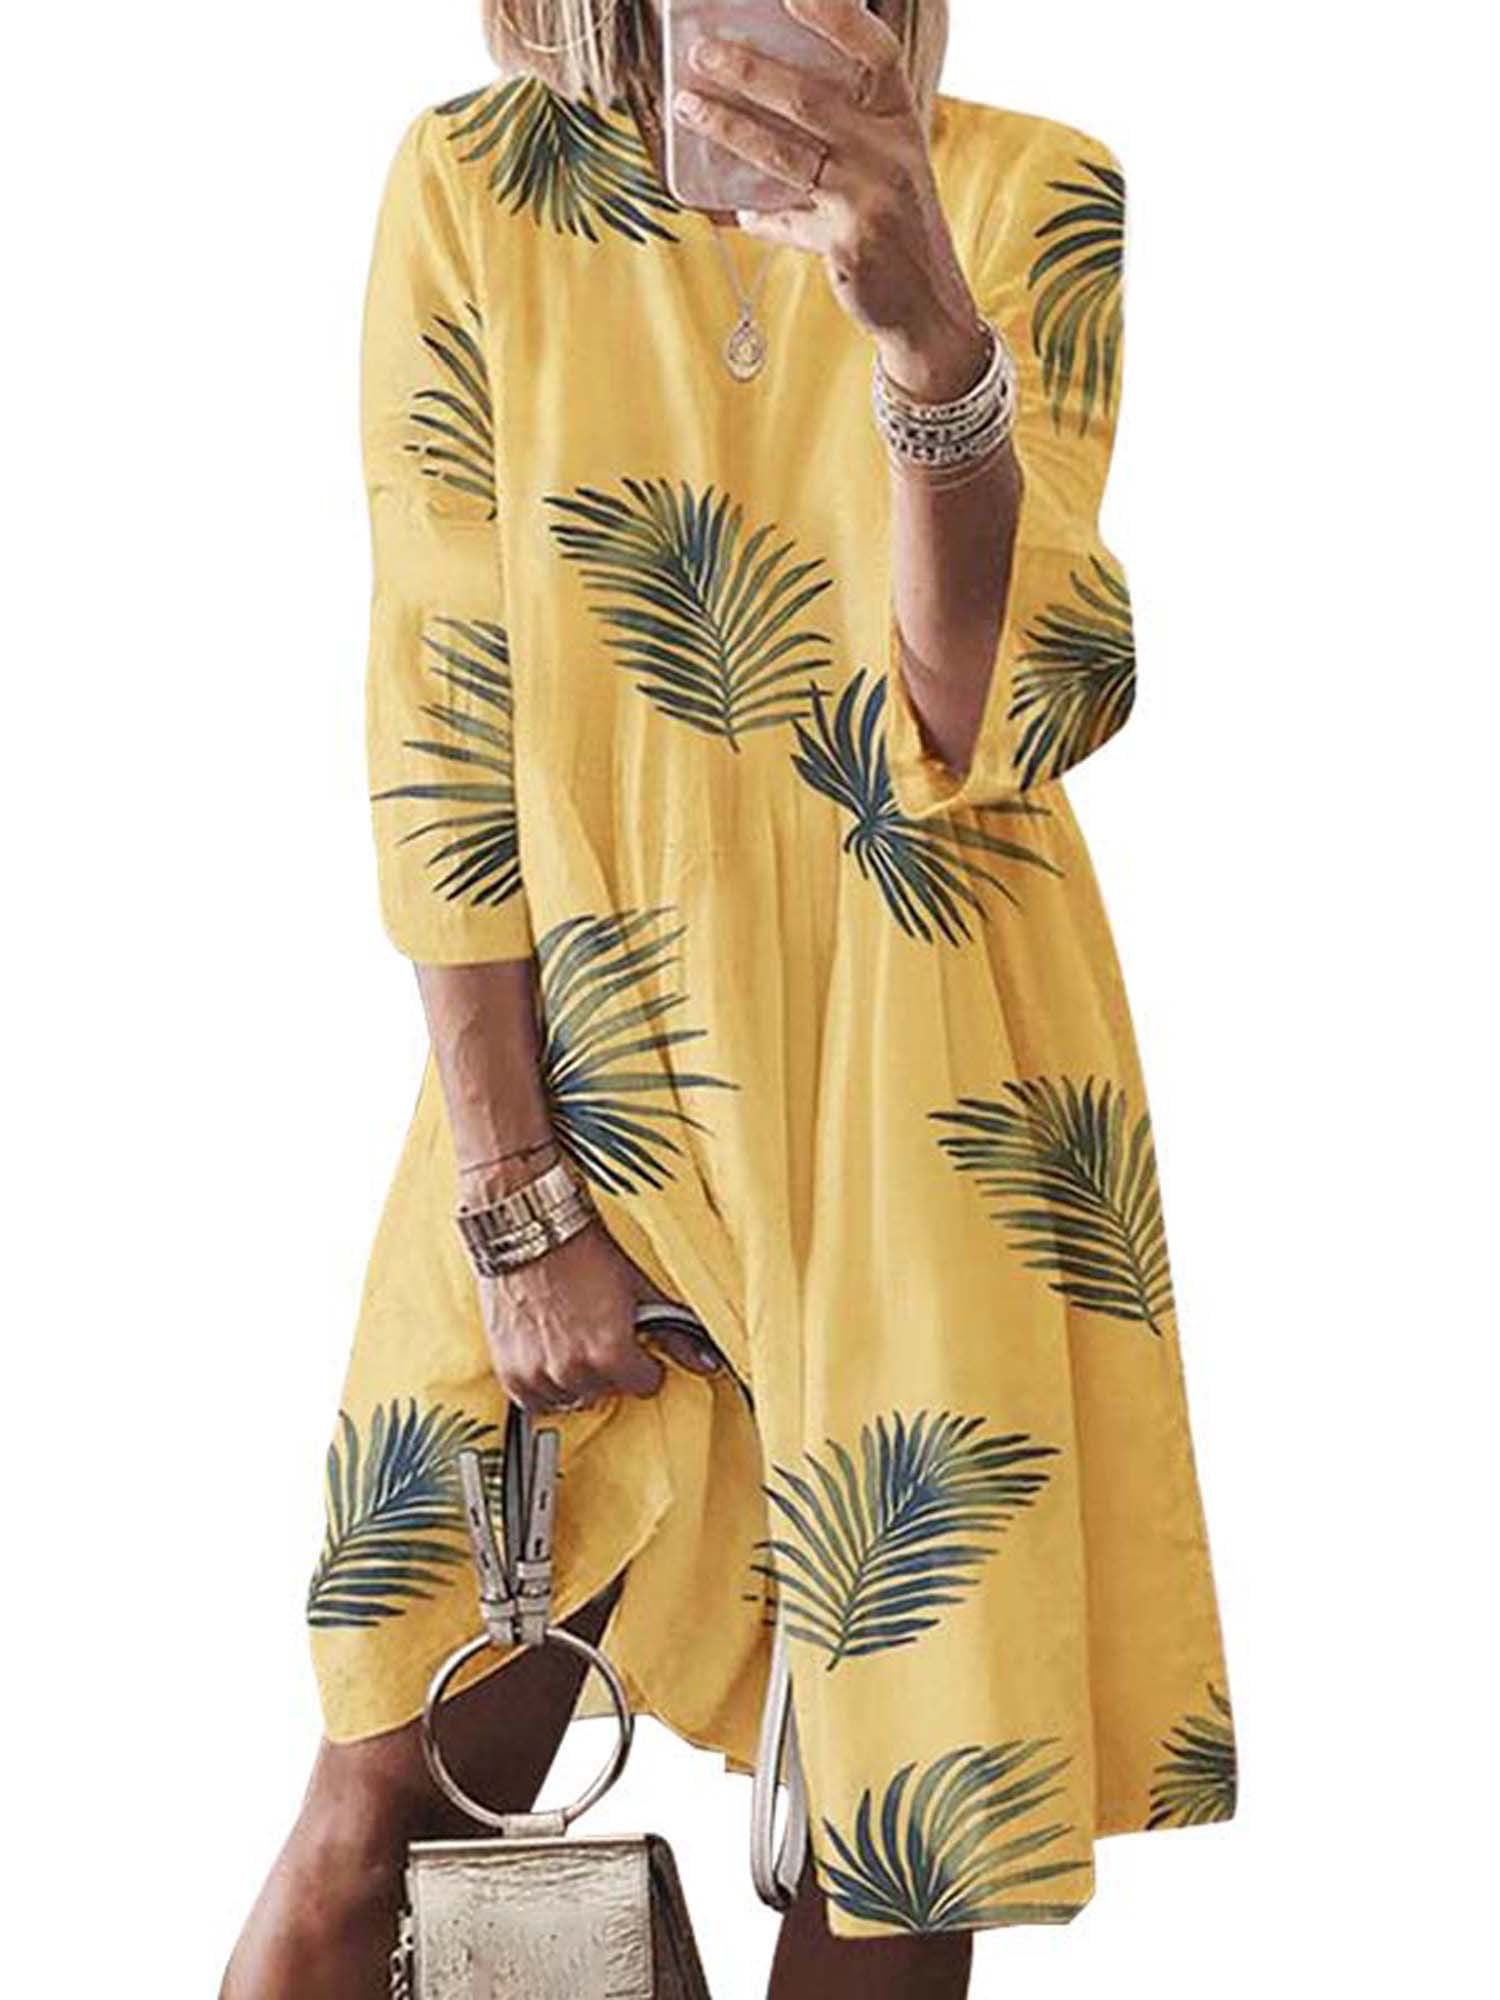 UUAISSO Women Maxi Dress Short Sleeves Dress Boho Floral Split Casual Loose Sundress Beach T-Shirt Dress for Summer